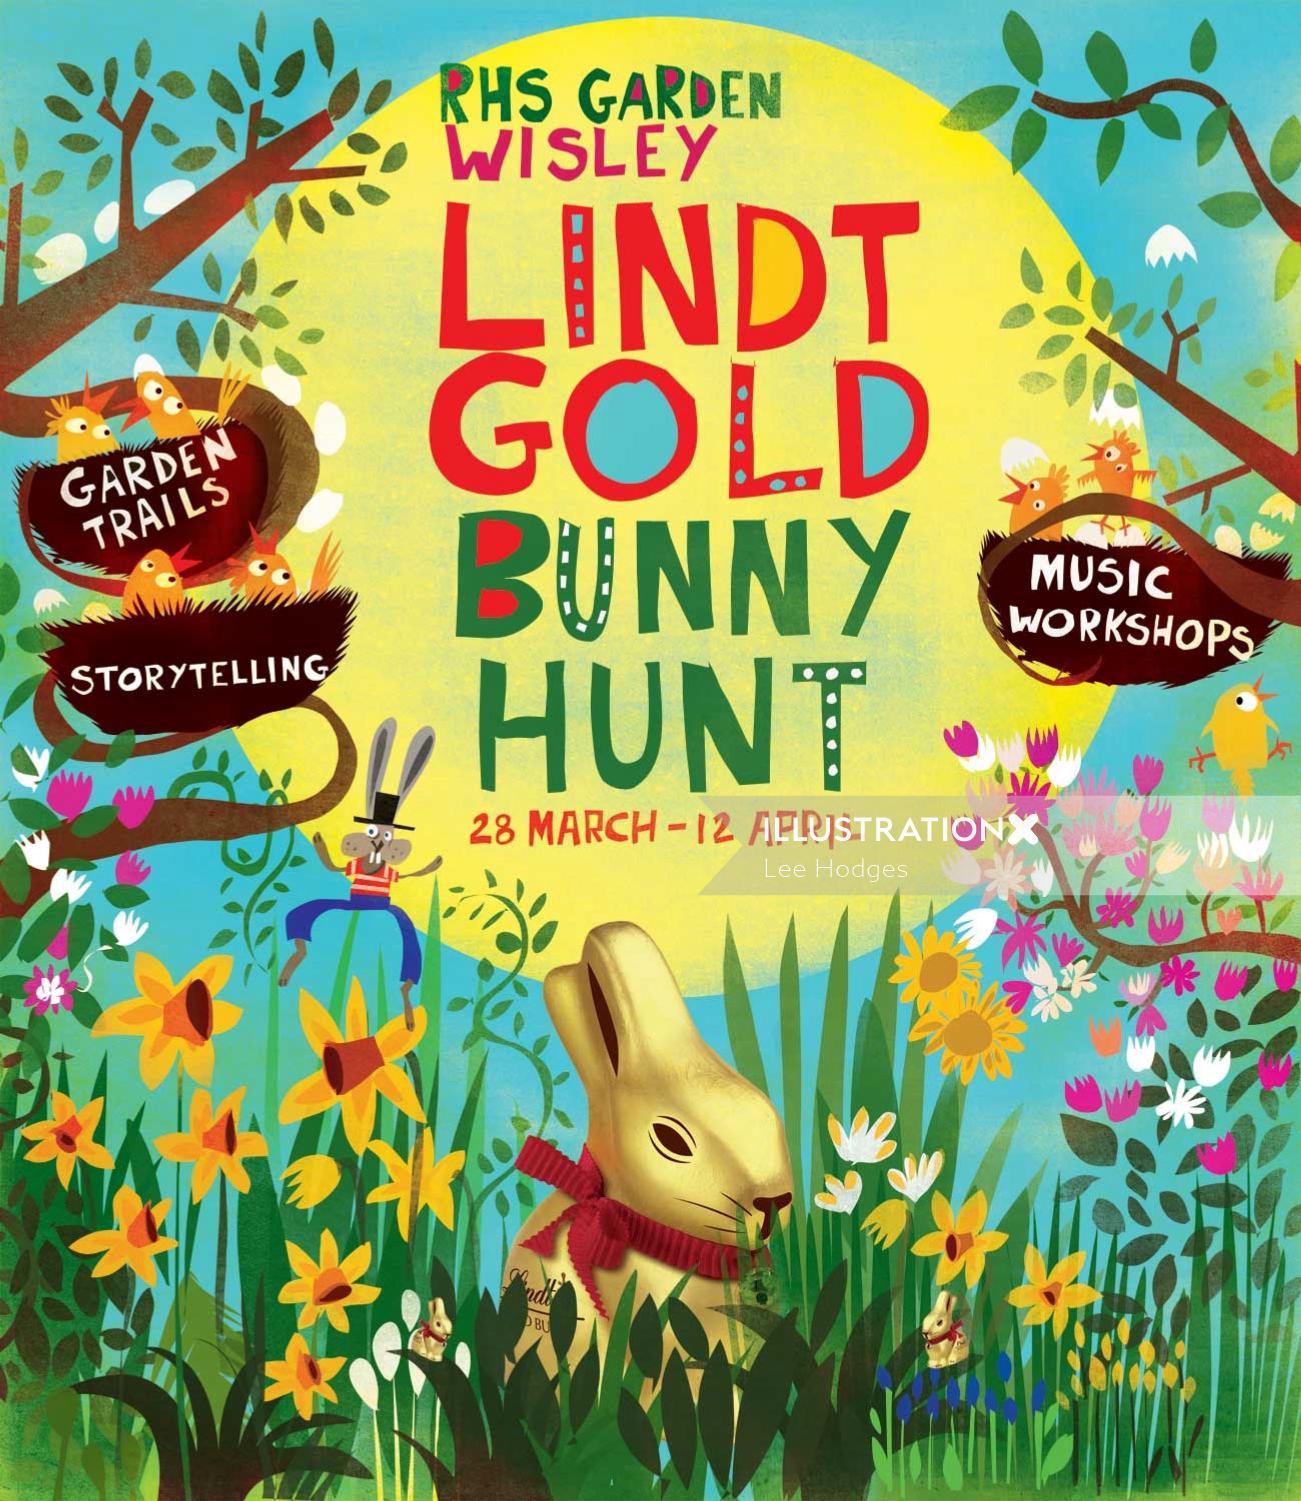 Affiche de la campagne Lint Gold Bunny Hunt-RHS